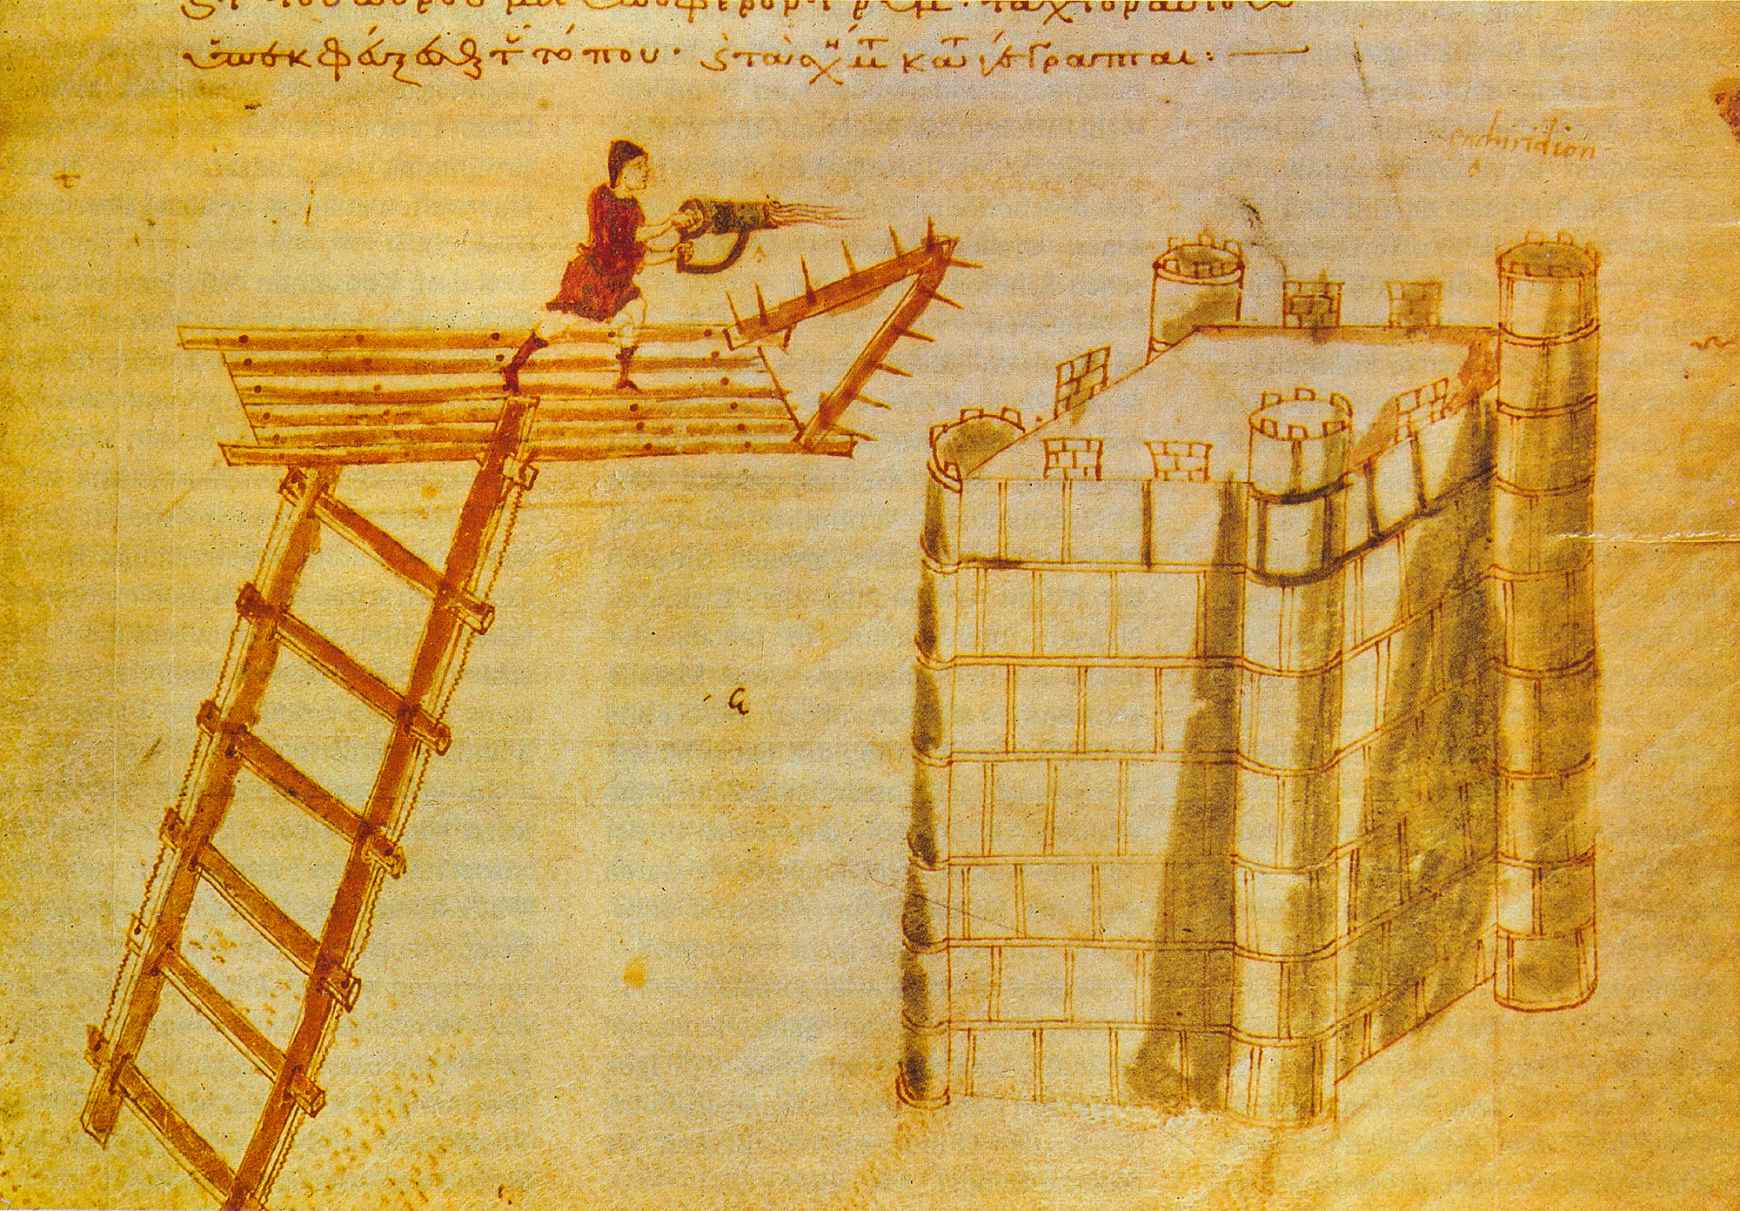 Penggunaan cheirosiphōn ("tangan-siphōn"), penyembur api portabel, digunakan dari atas jembatan terbang melawan kastil. Penerangan dari Poliorcetica of Hero of Byzantium.